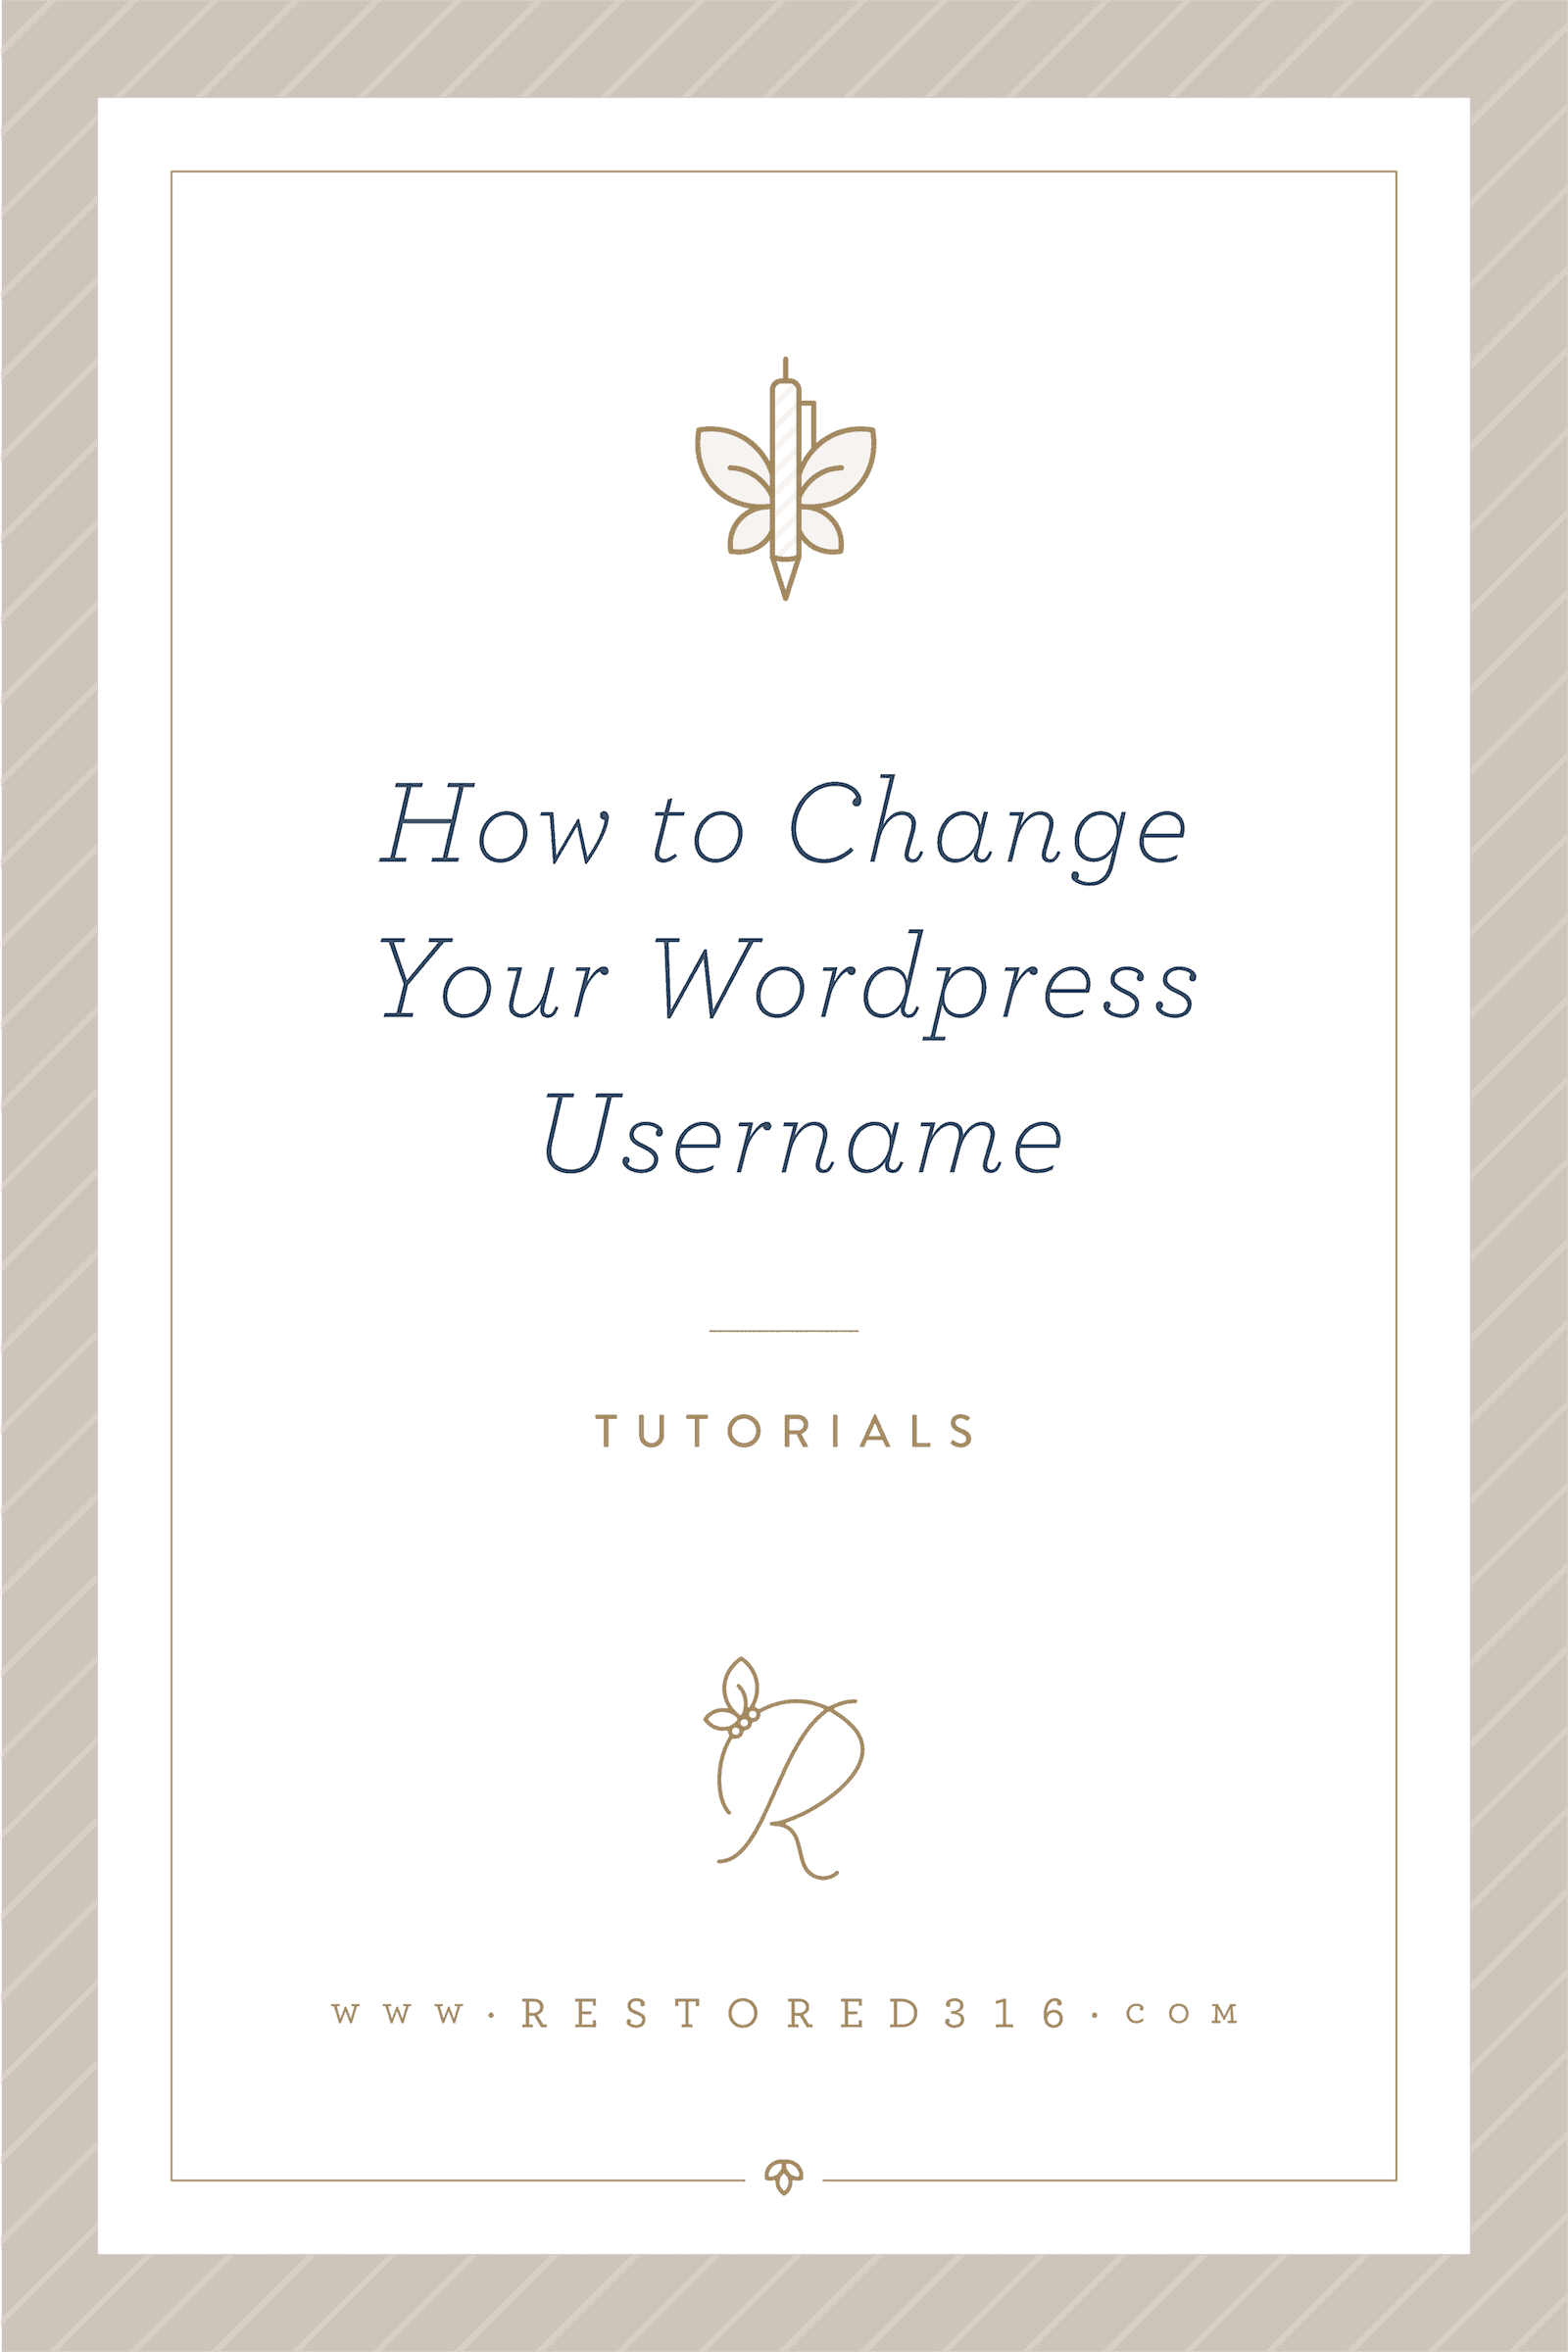 How to change your WordPress username